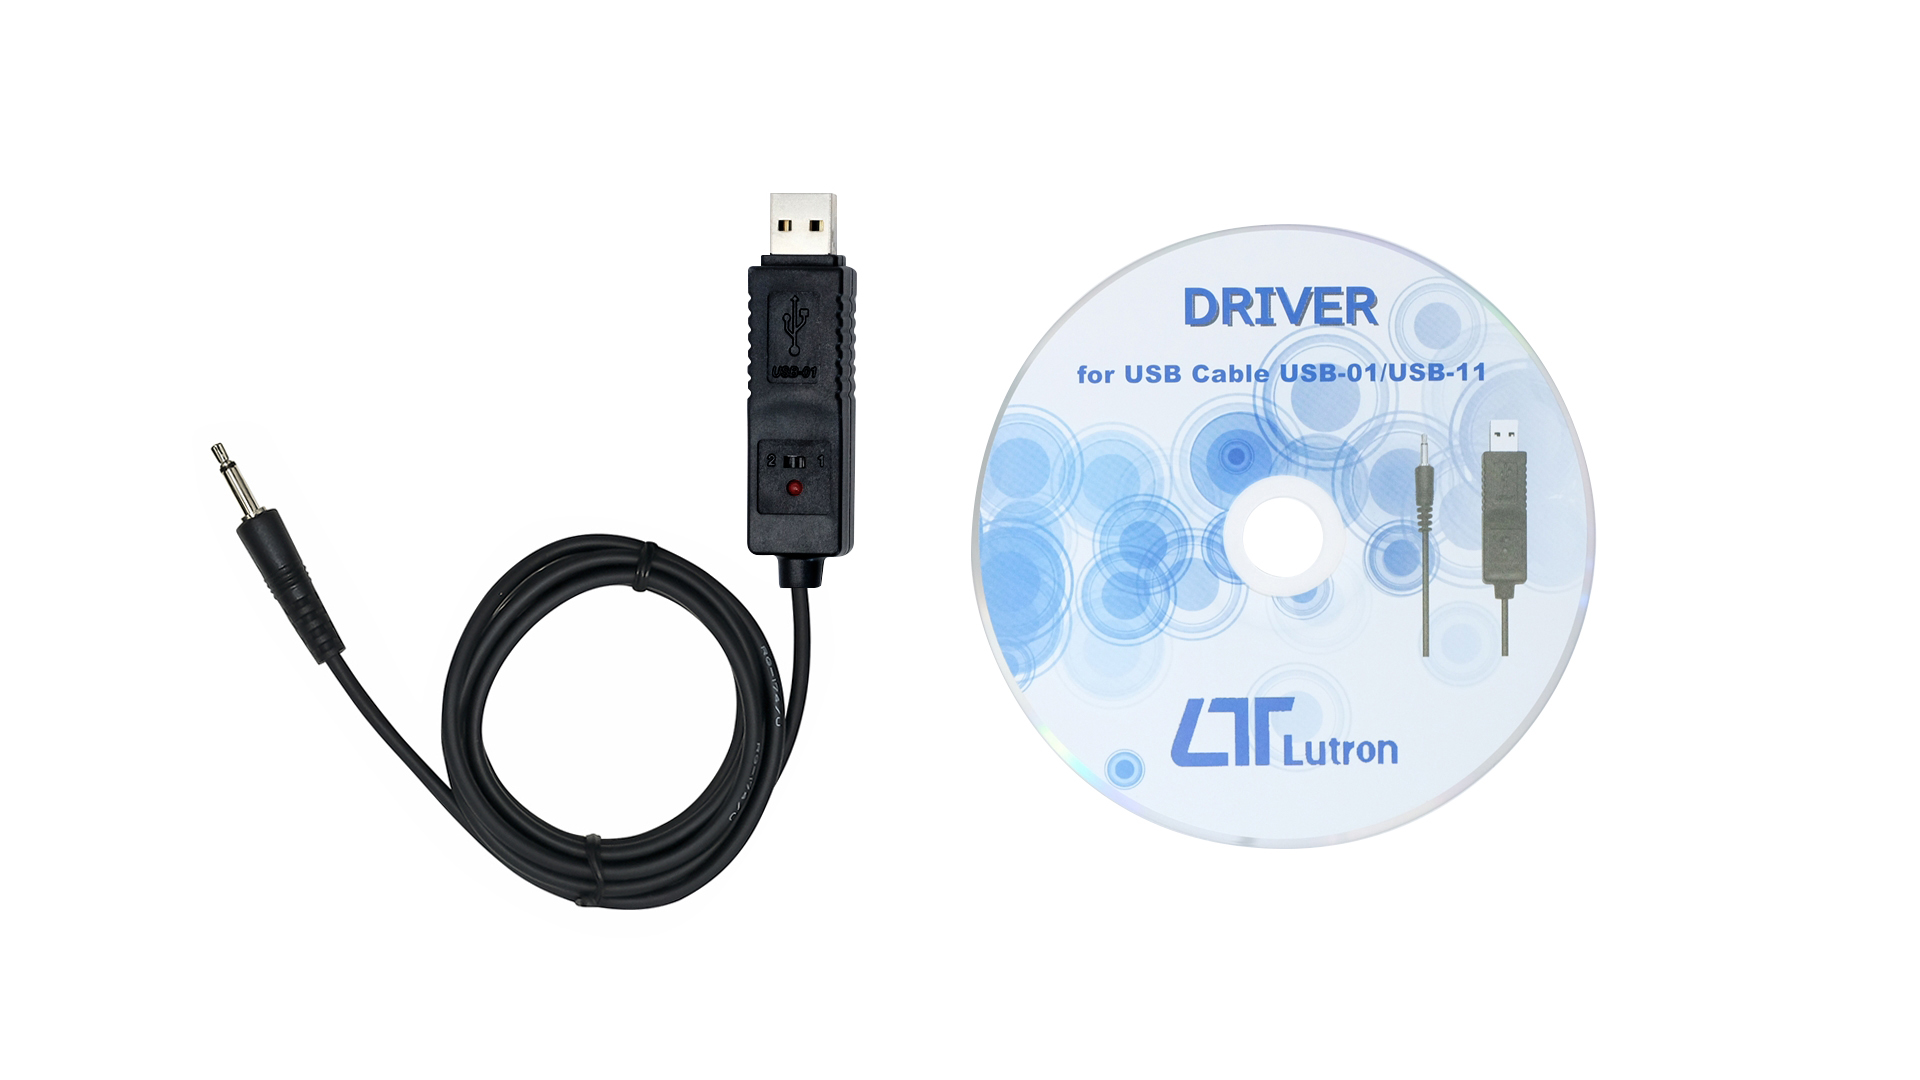 デジタル計測器と防犯カメラの総合メーカー 株式会社マザーツール » USB-01